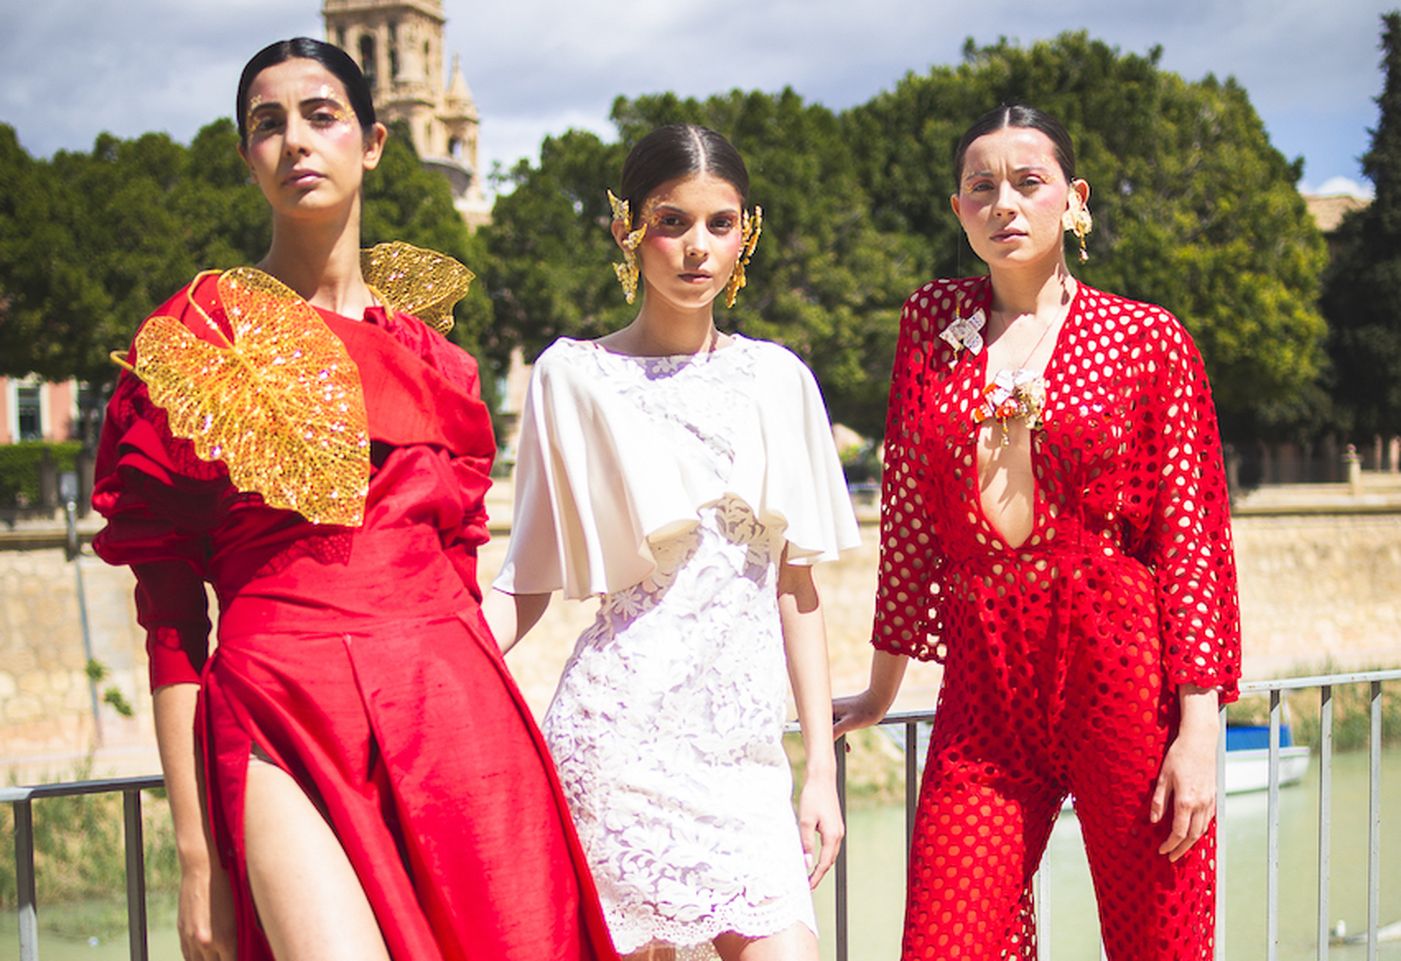 La moda sostenible protagonista en el desfile de la prestigiosa diseñadora leonesa María Lafuente en la terraza de Molinos del Río